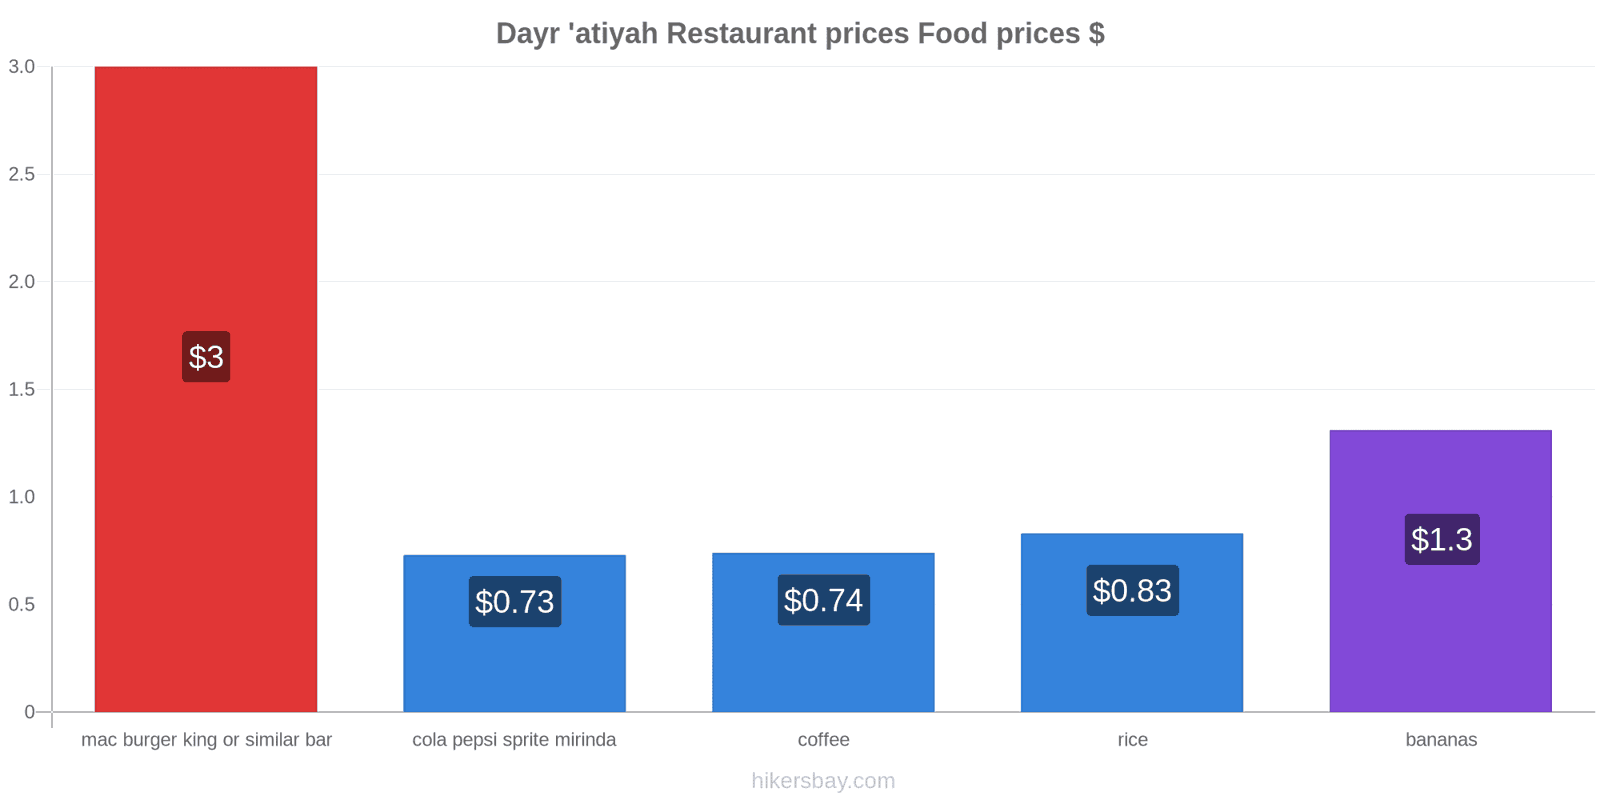 Dayr 'atiyah price changes hikersbay.com